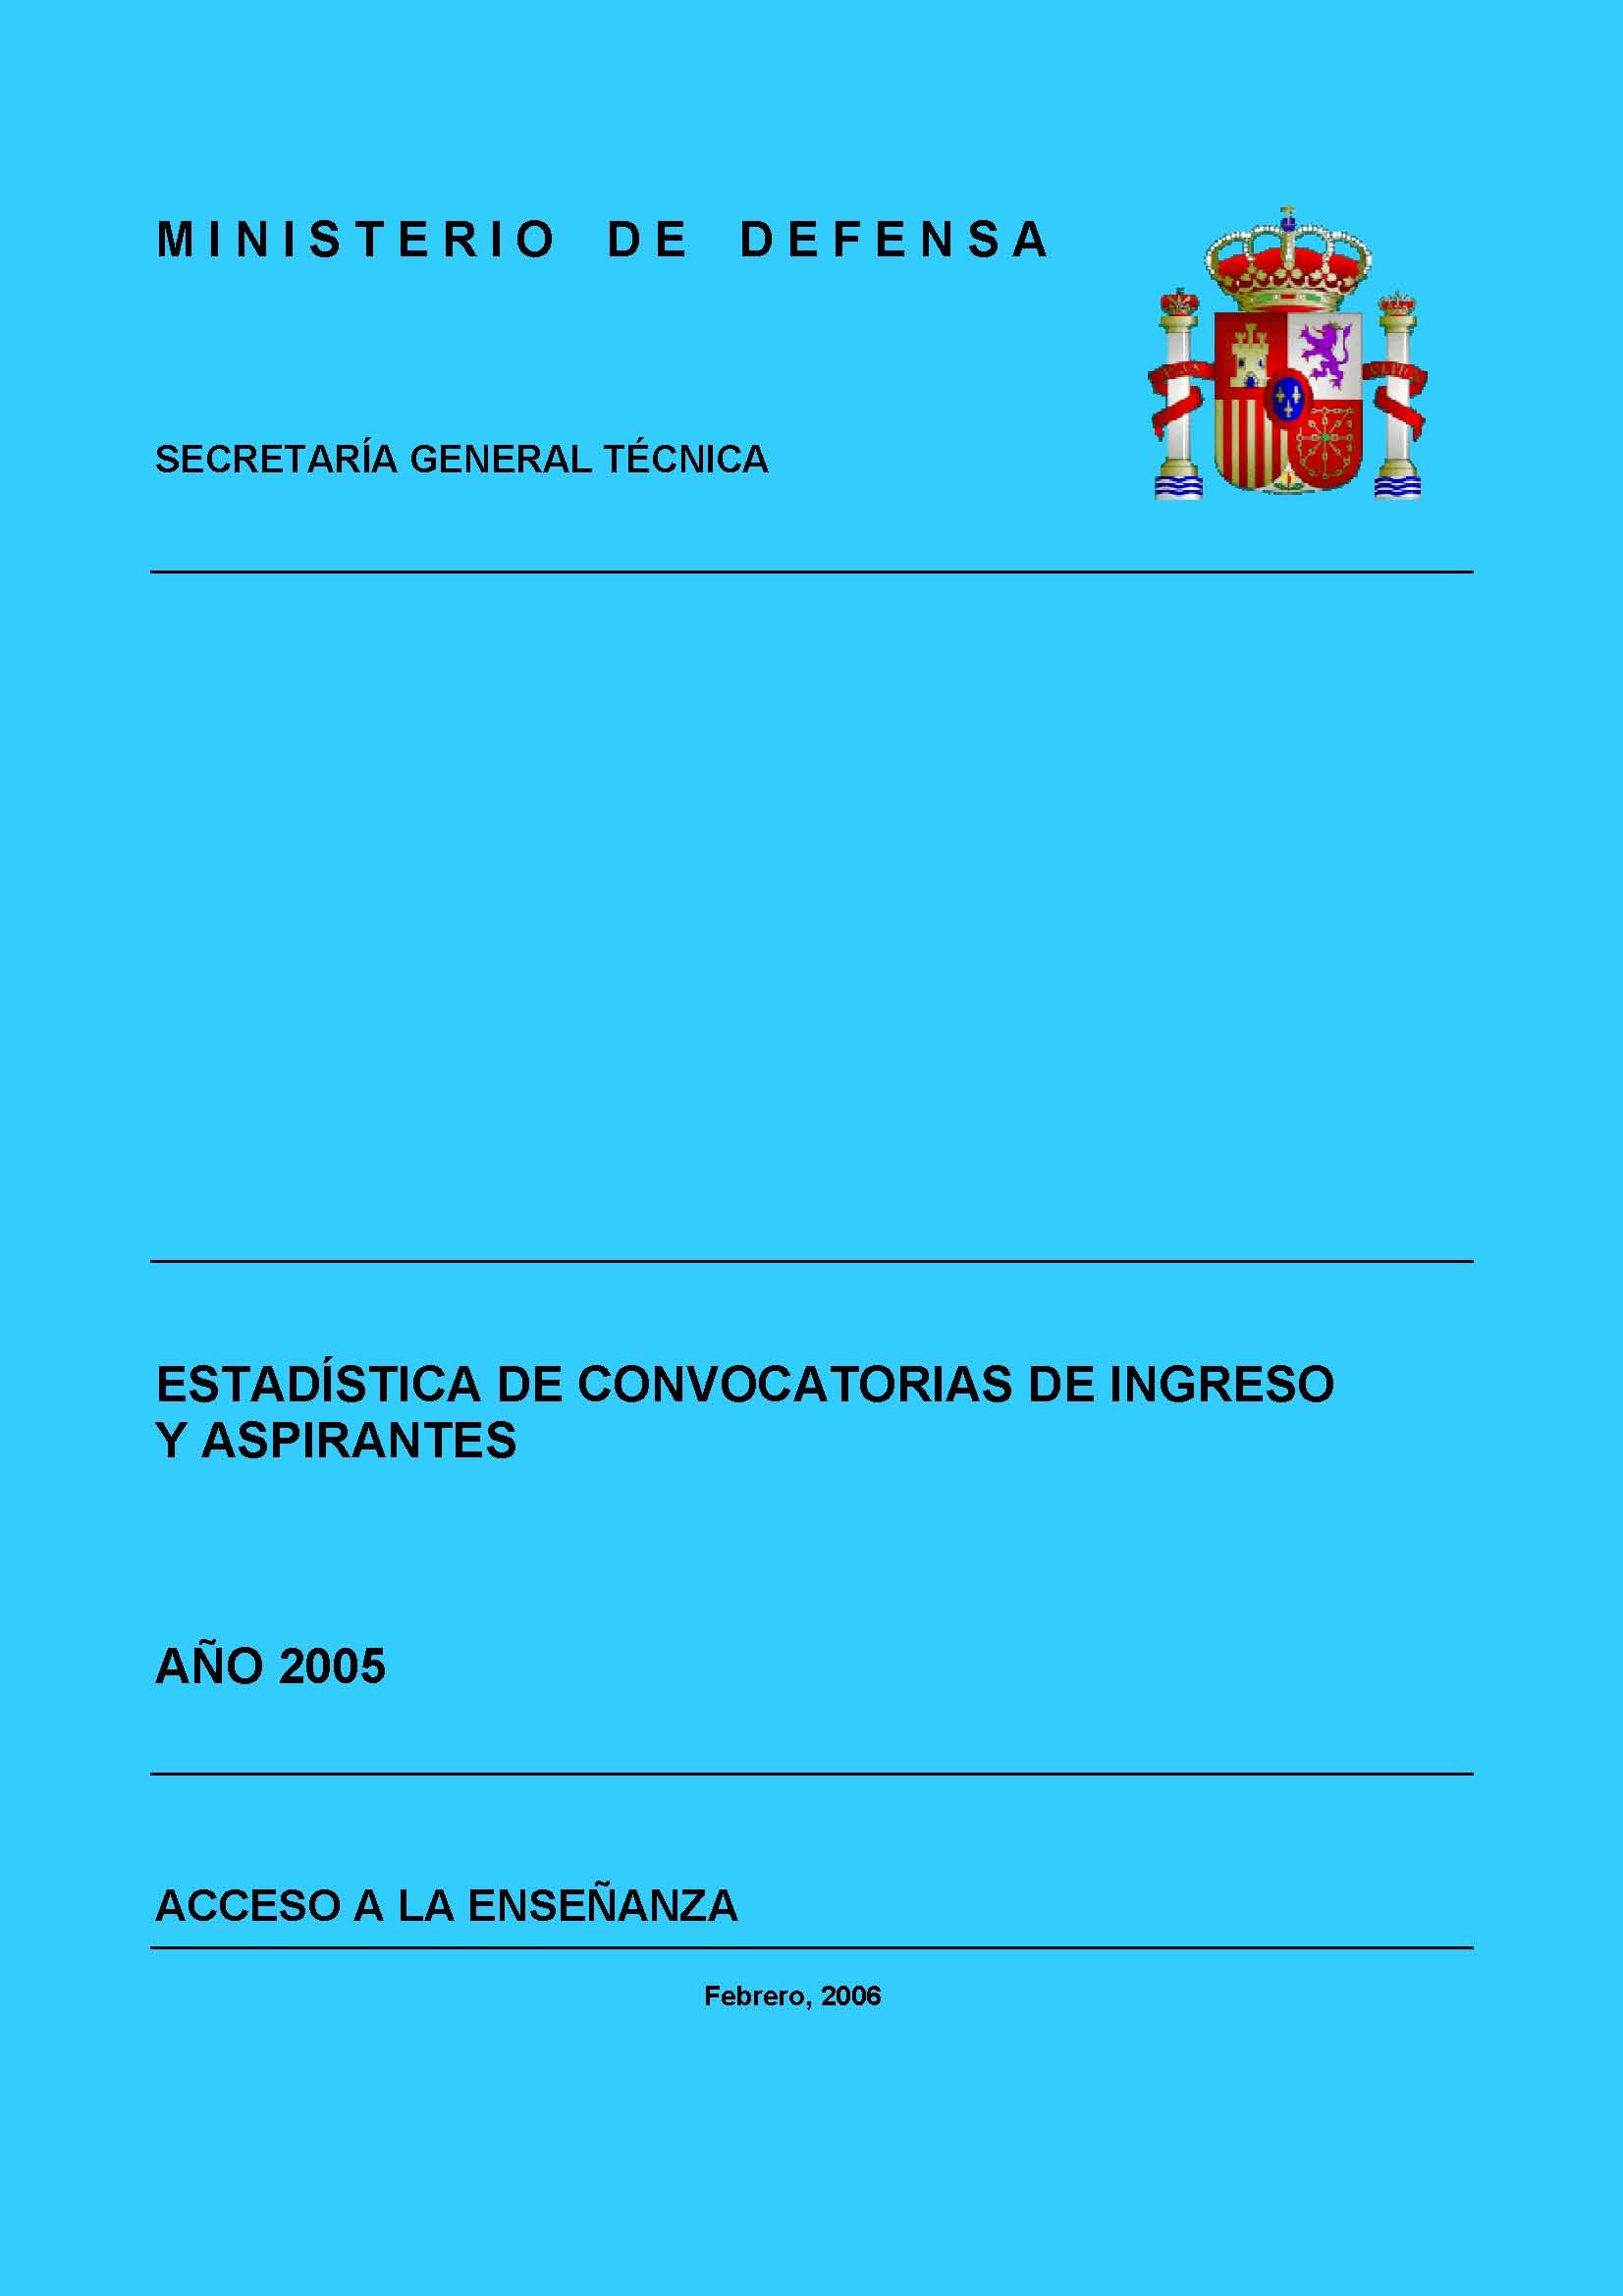 ESTADÍSTICA DE CONVOCATORIAS DE INGRESO Y ASPIRANTES 2005